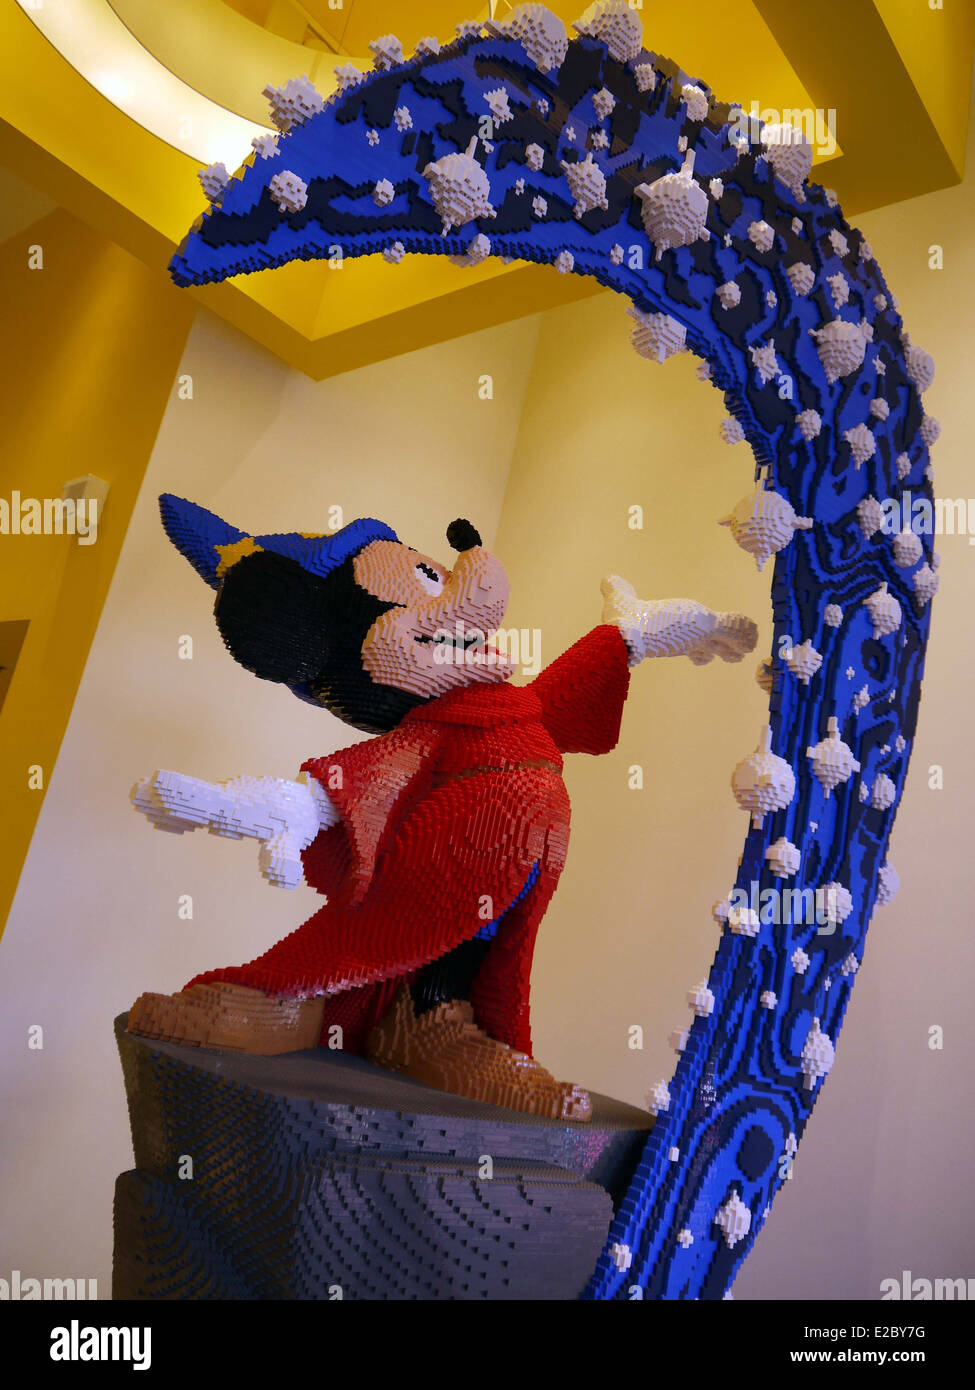 Mickey-Mouse Fantasia-Figur aus Lego - wurde dieses Bild im Lego Shop in Euro Disney aufgenommen. Stockfoto